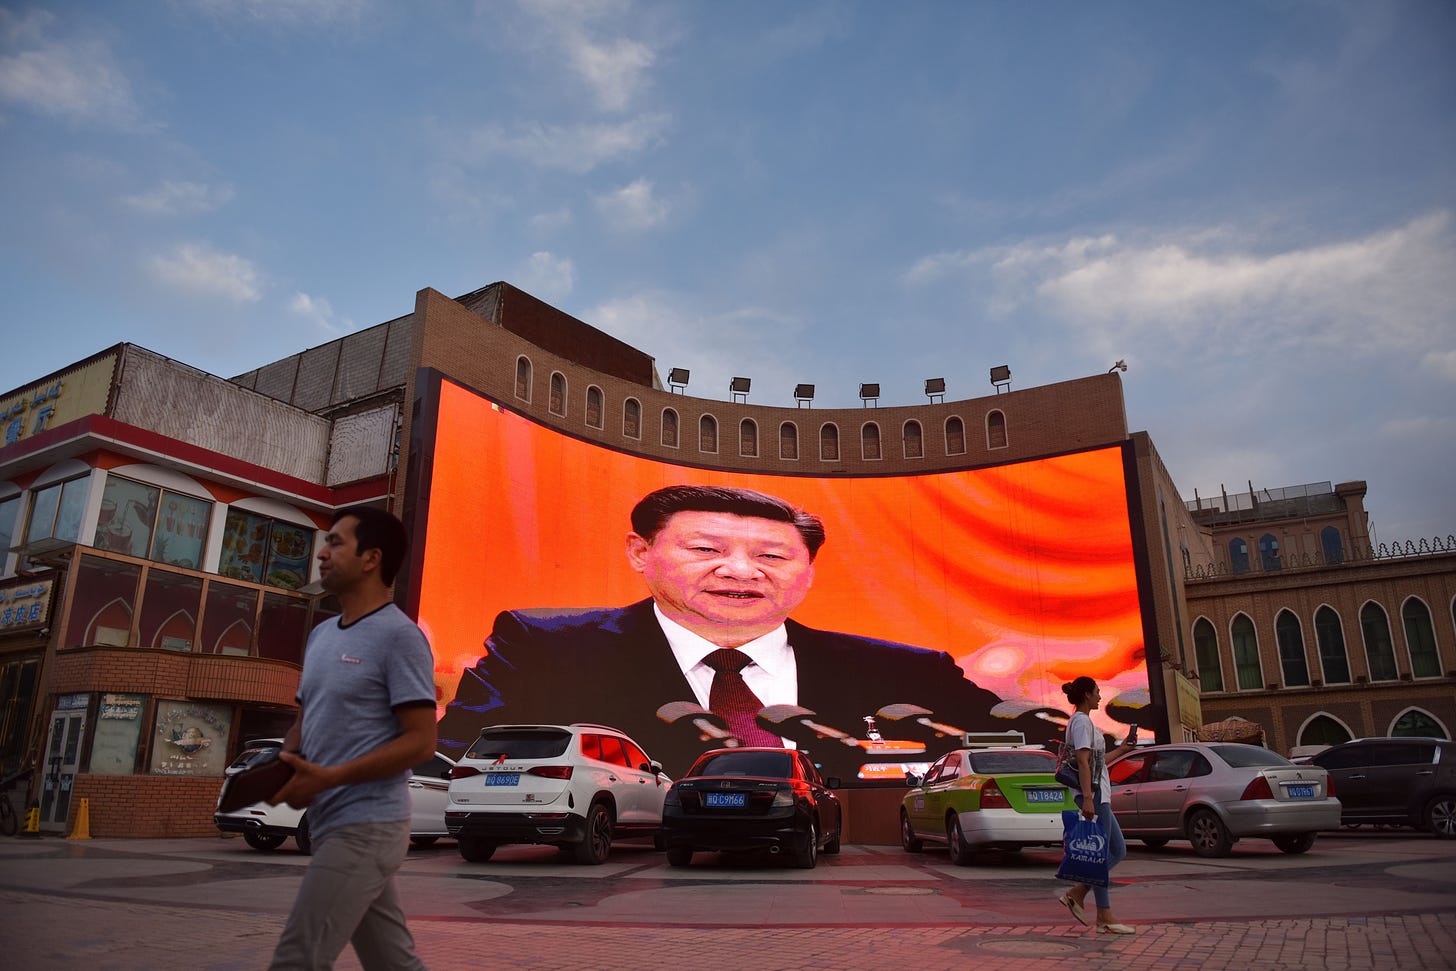 Screen showing Chairman Xi Jinping in Xinjiang, June 4, 2019. (Photo by Greg Baker/AFP via Getty Images.)